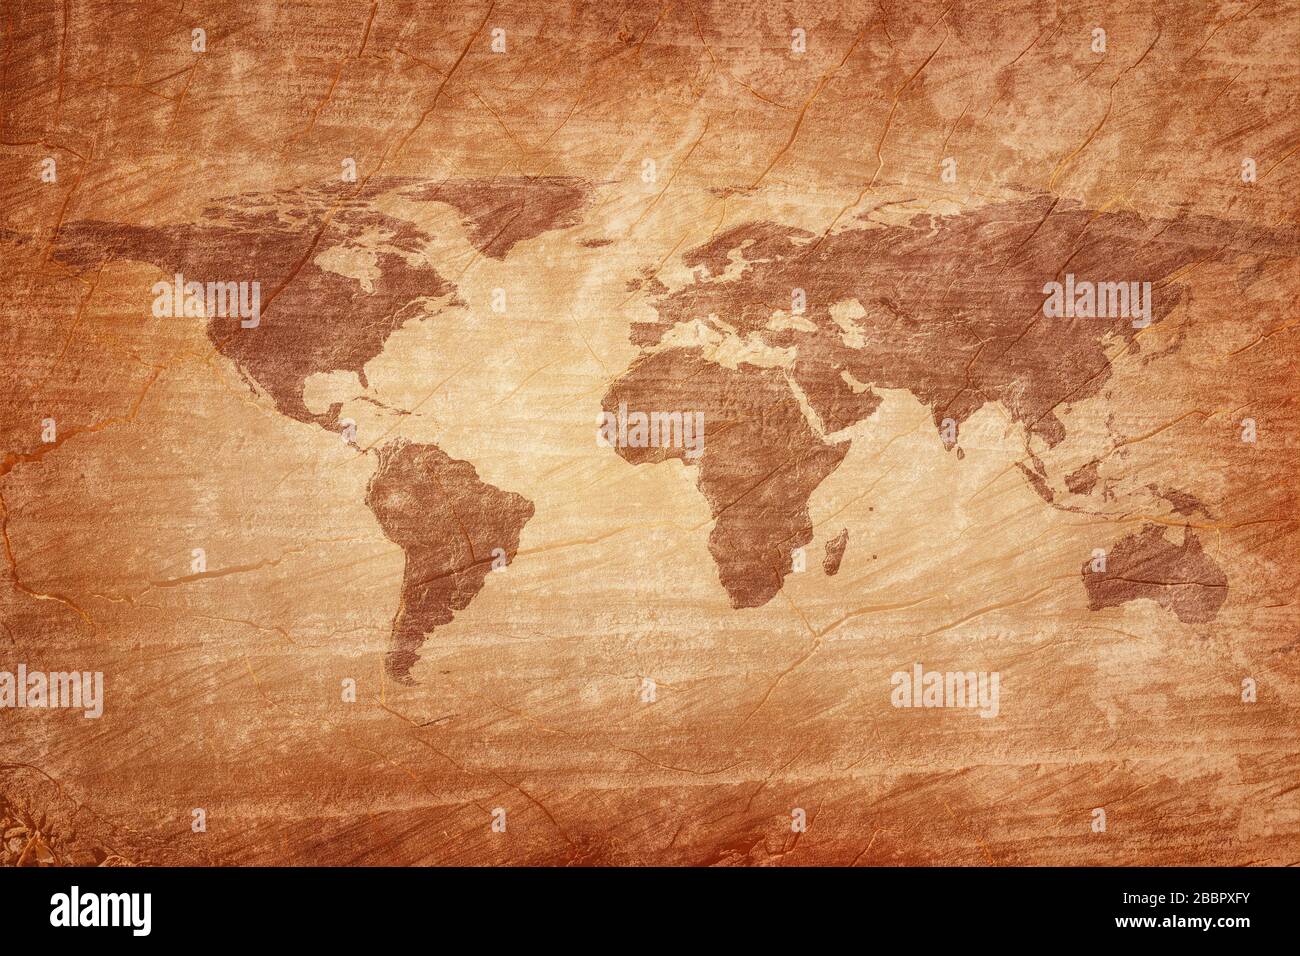 Alte Karte der Welt auf einem alten Holzpergamenthintergrund. Vintage-Stil. Elemente dieses Bildes, das von der NASA eingerichtet wurde Stockfoto